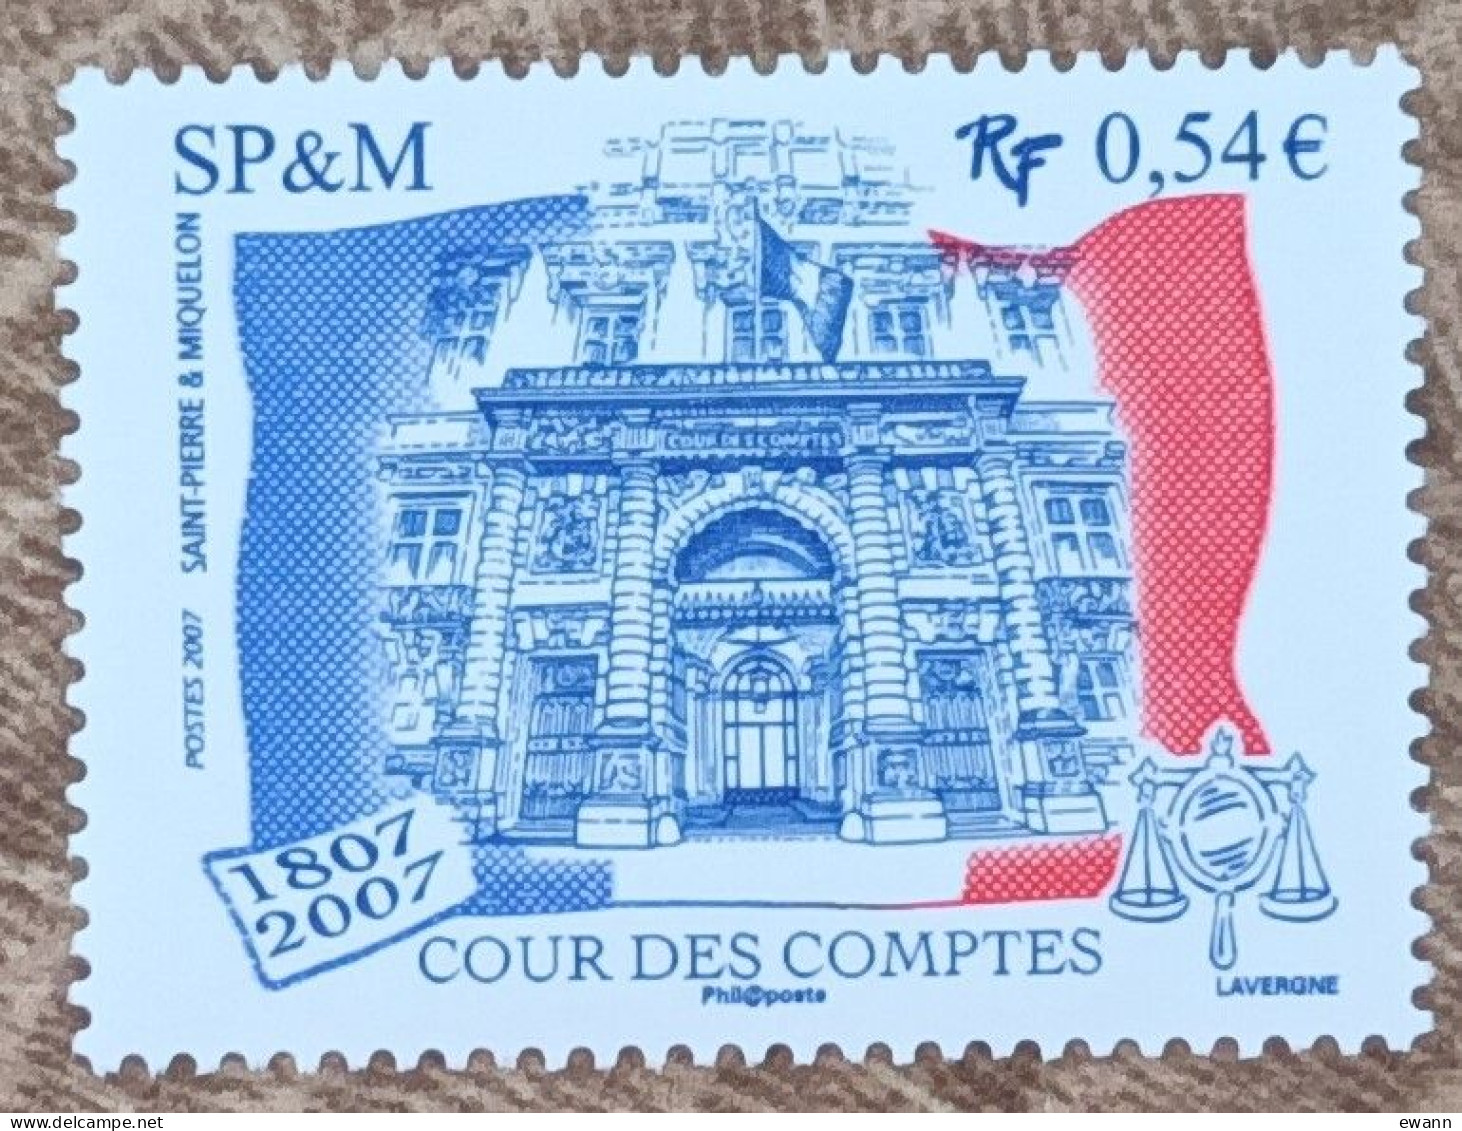 Saint Pierre Et Miquelon - YT N°885 - Cour Des Comptes - 2007 - Neuf - Unused Stamps